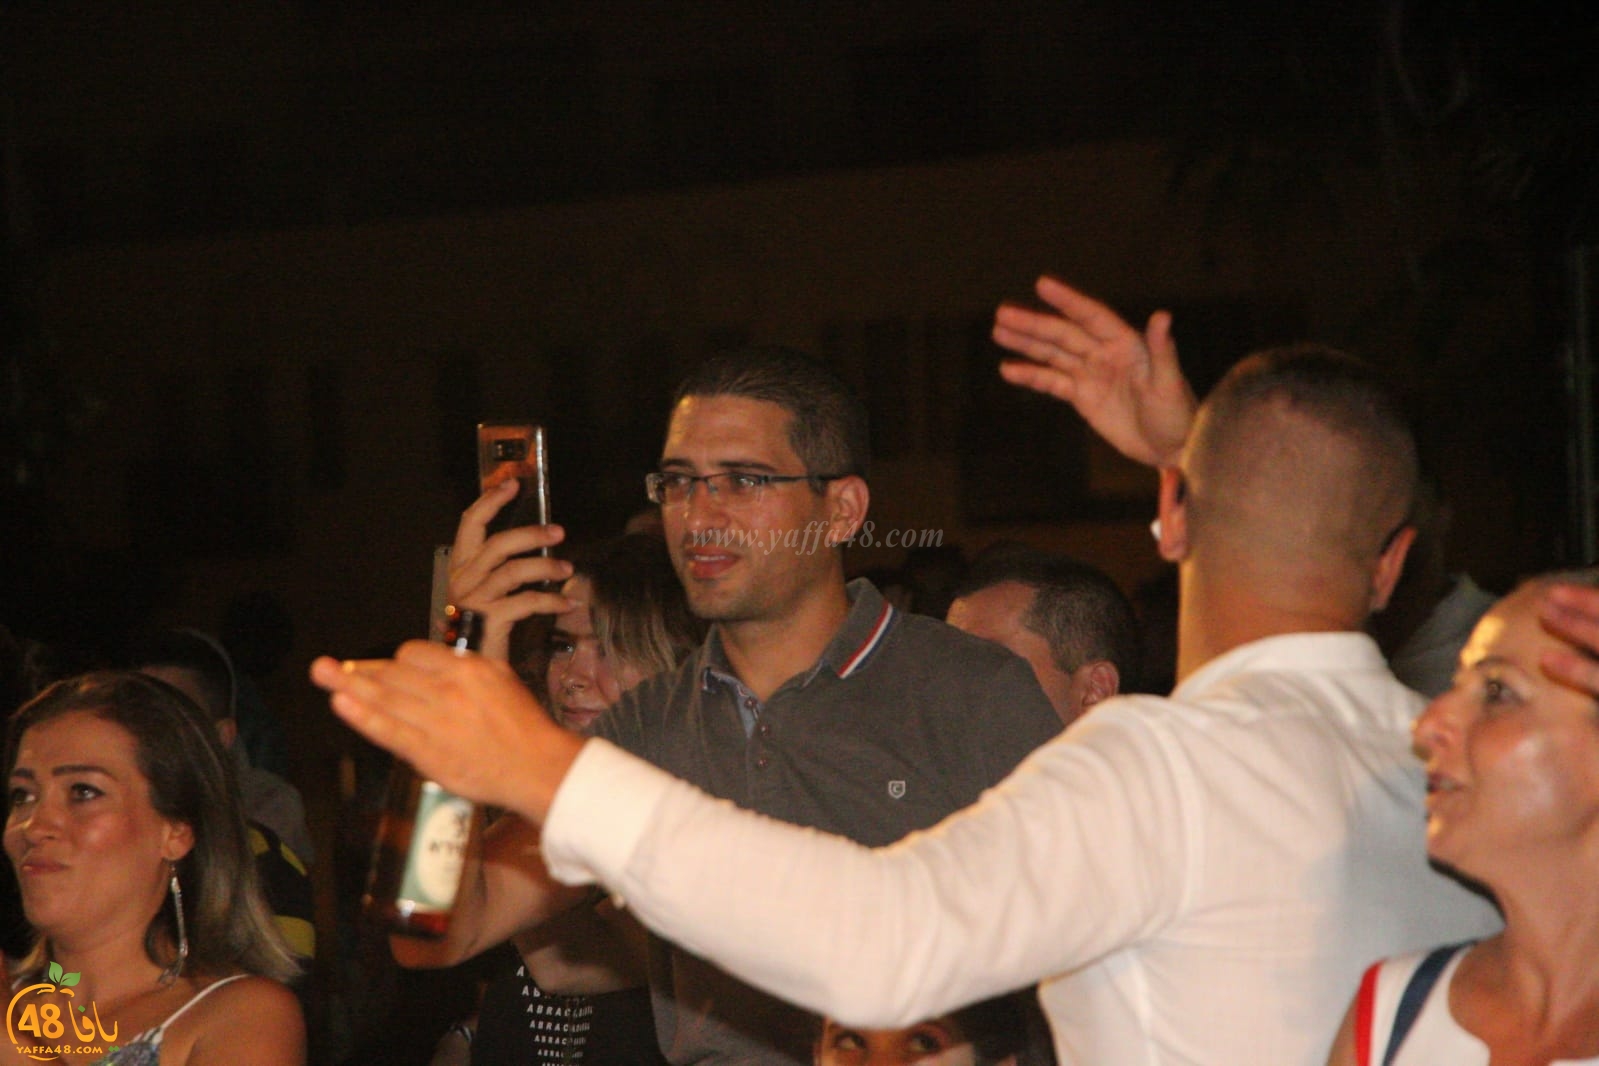  بالصور: اليوم الأول لمهرجان يافوية في مسرح السرايا العربي بيافا